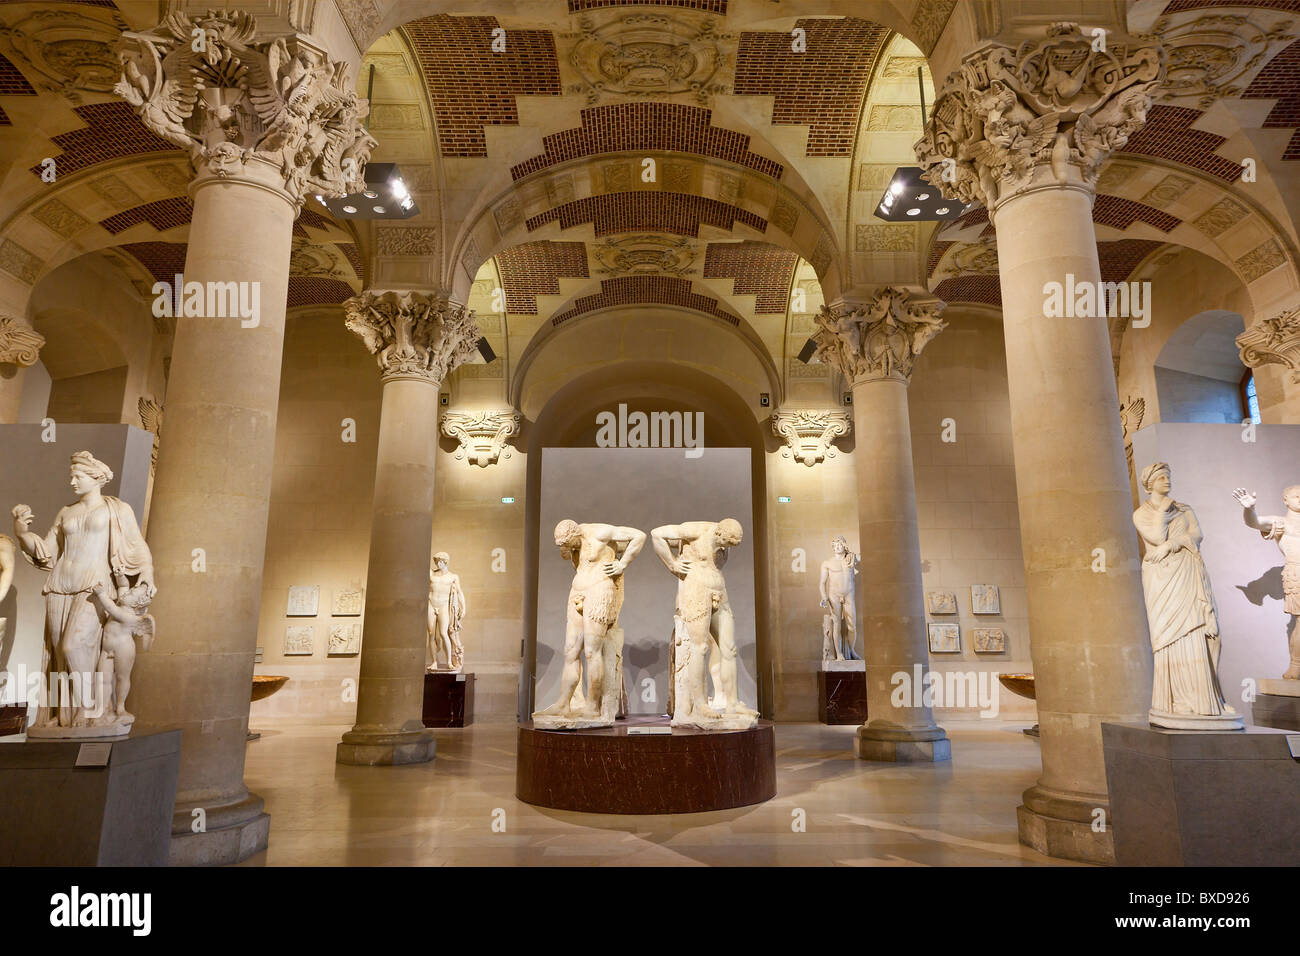 Paris, Musee du Louvre Stock Photo